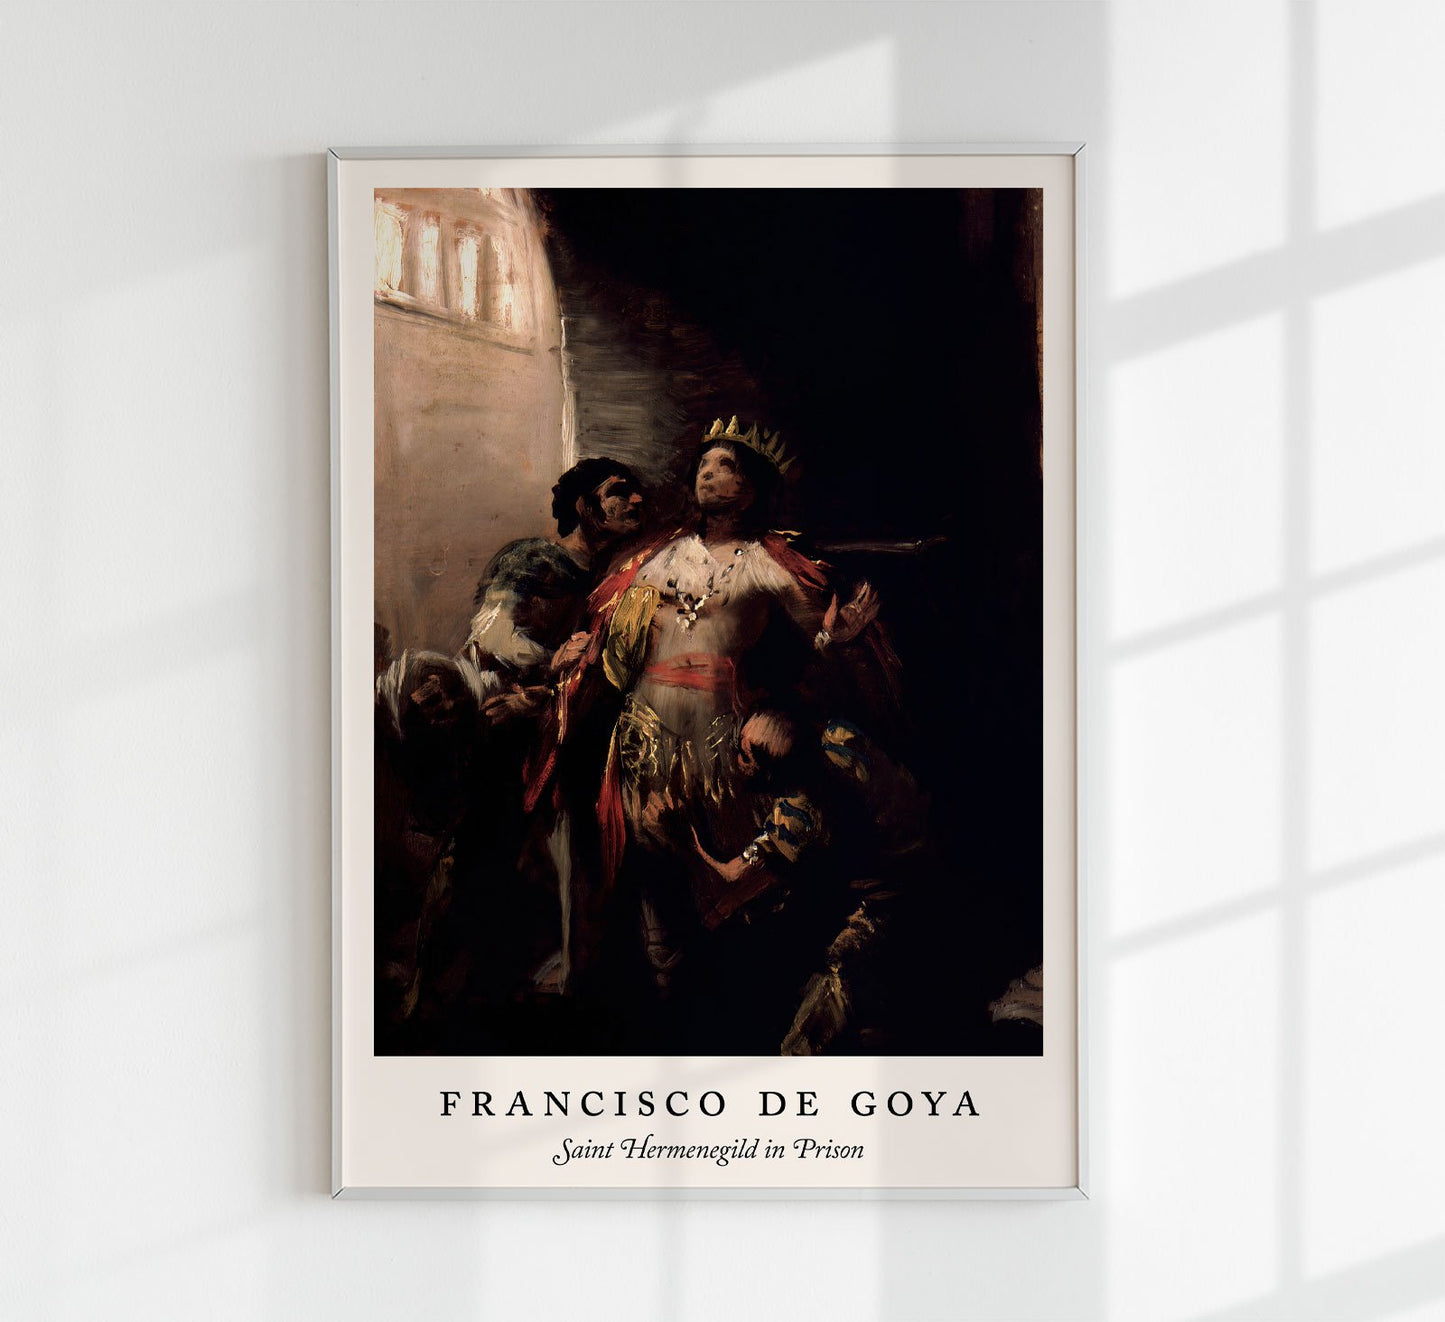 Saint Hermenegild in Prison by Francisco de Goya